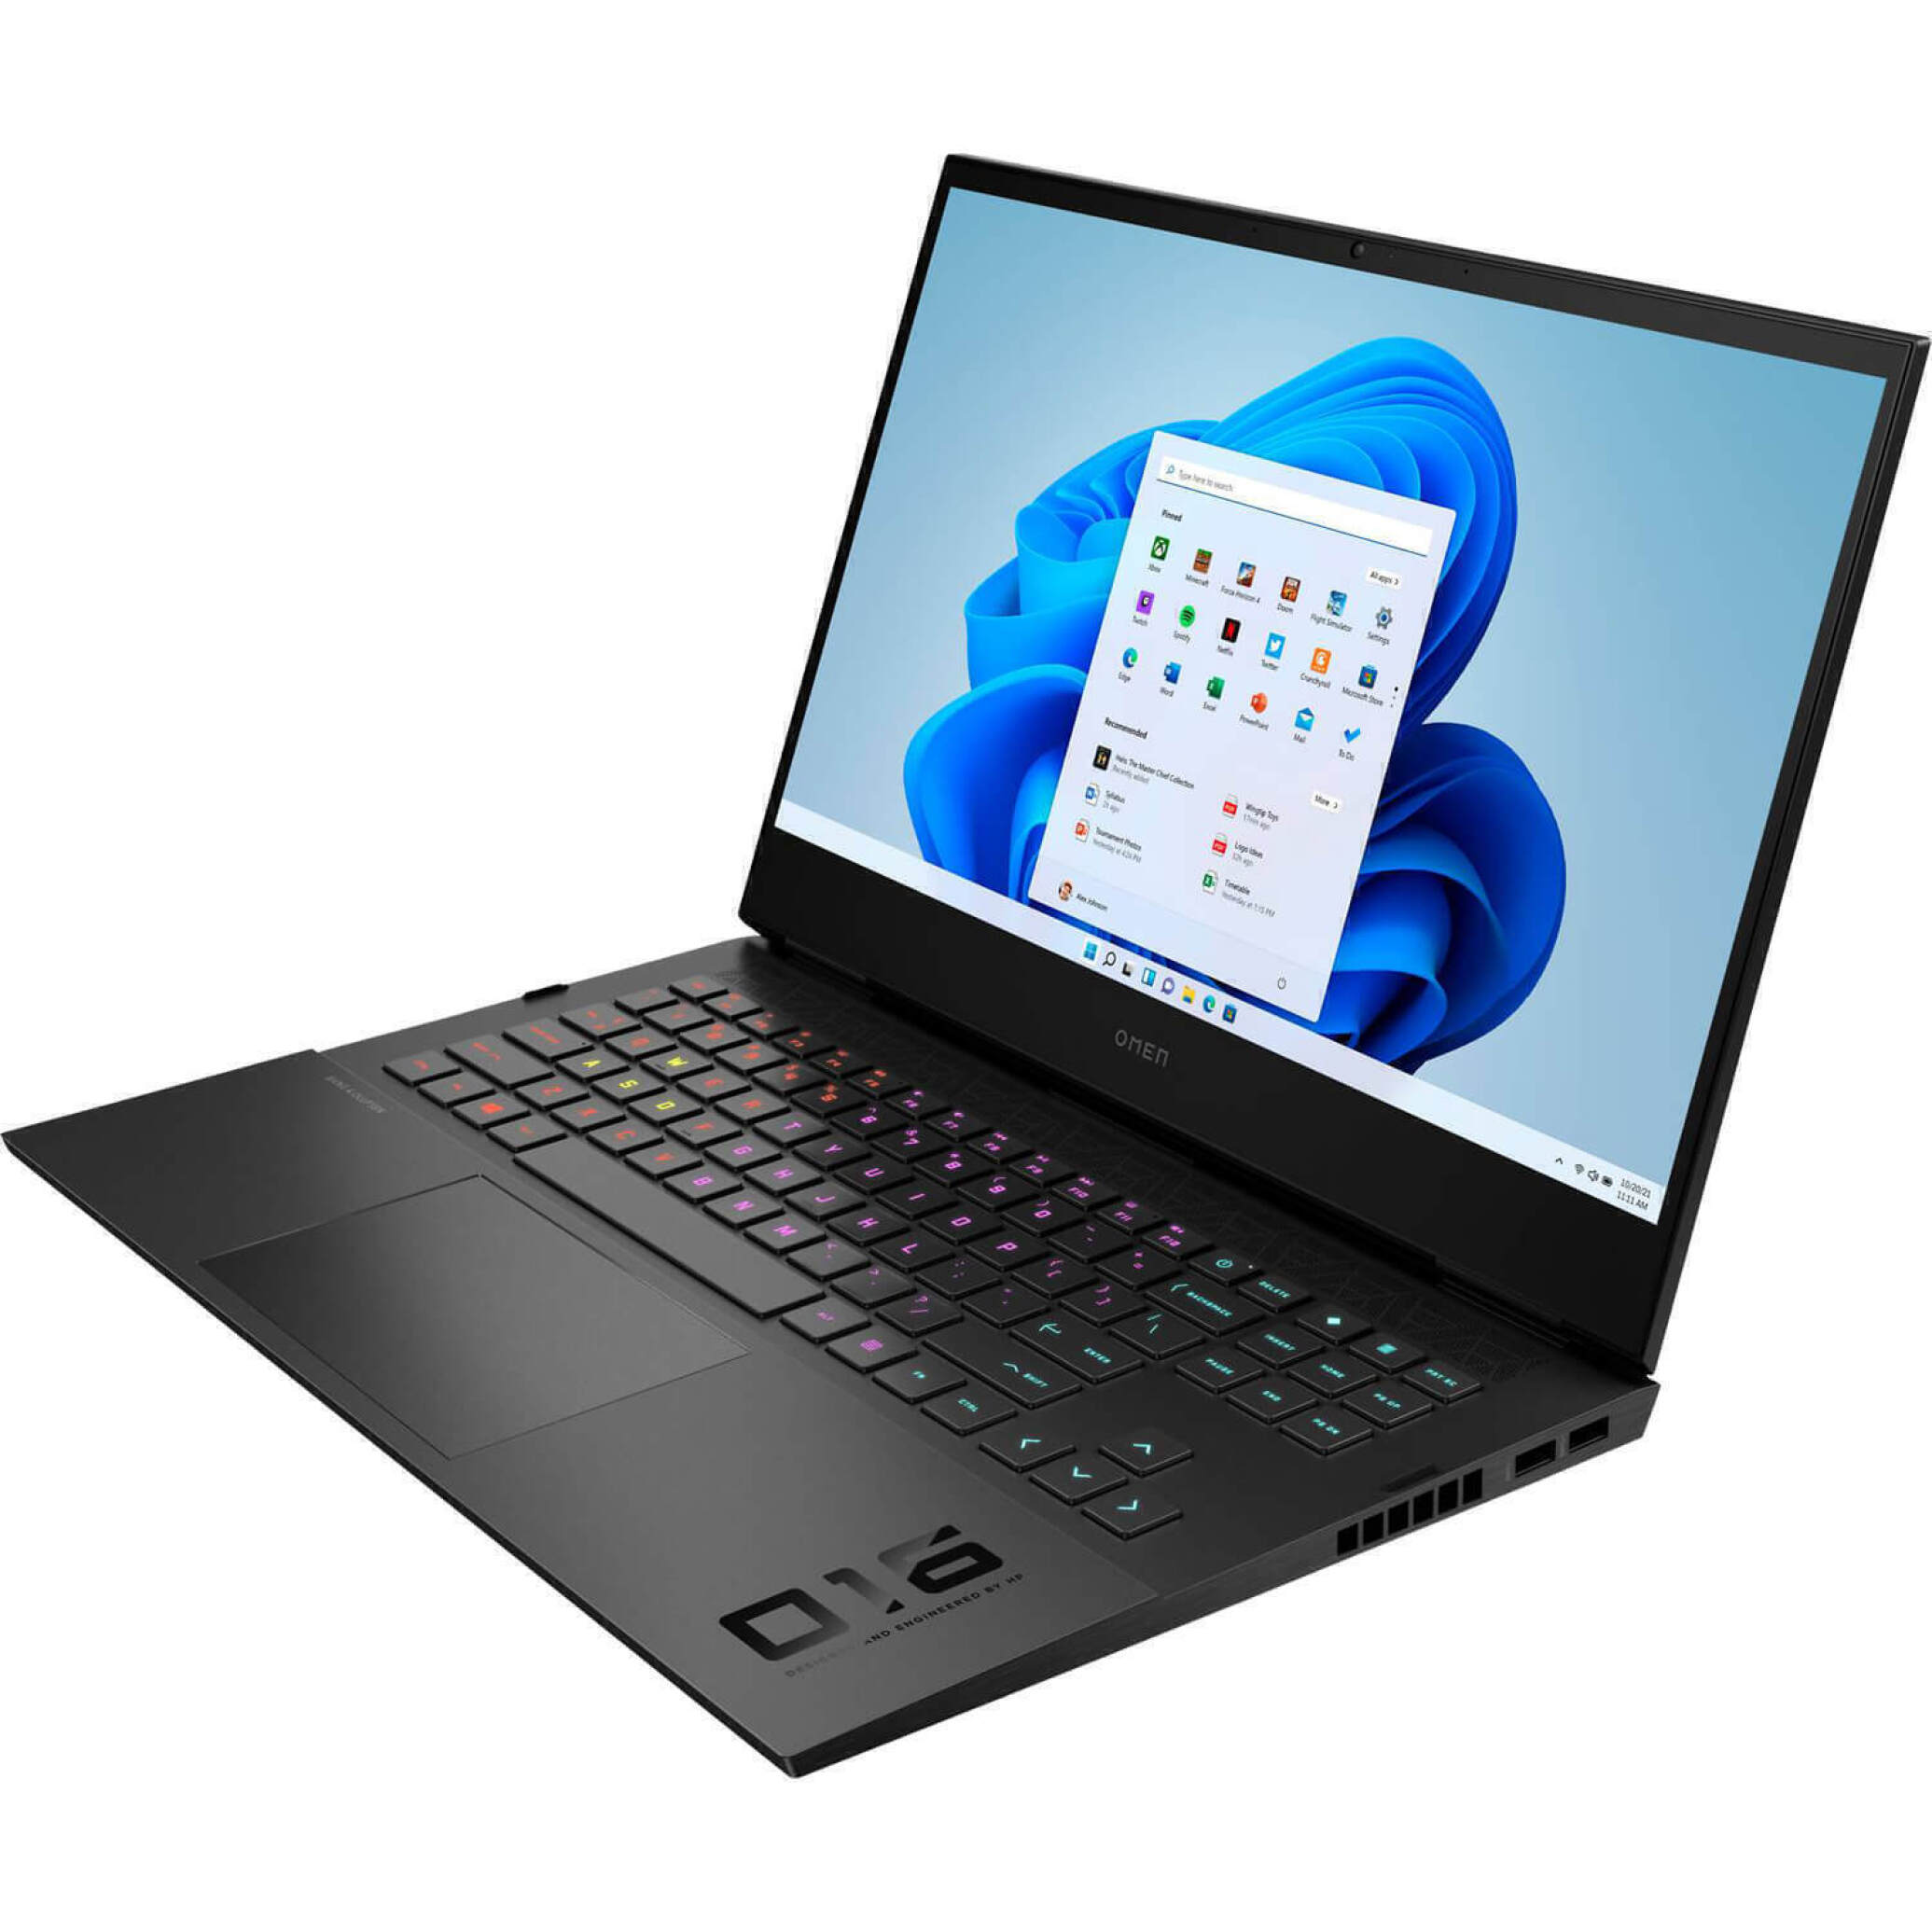  لپ تاپ HP OMEN 16 C0007ns - 2022 | لاکچری لپ تاپ 